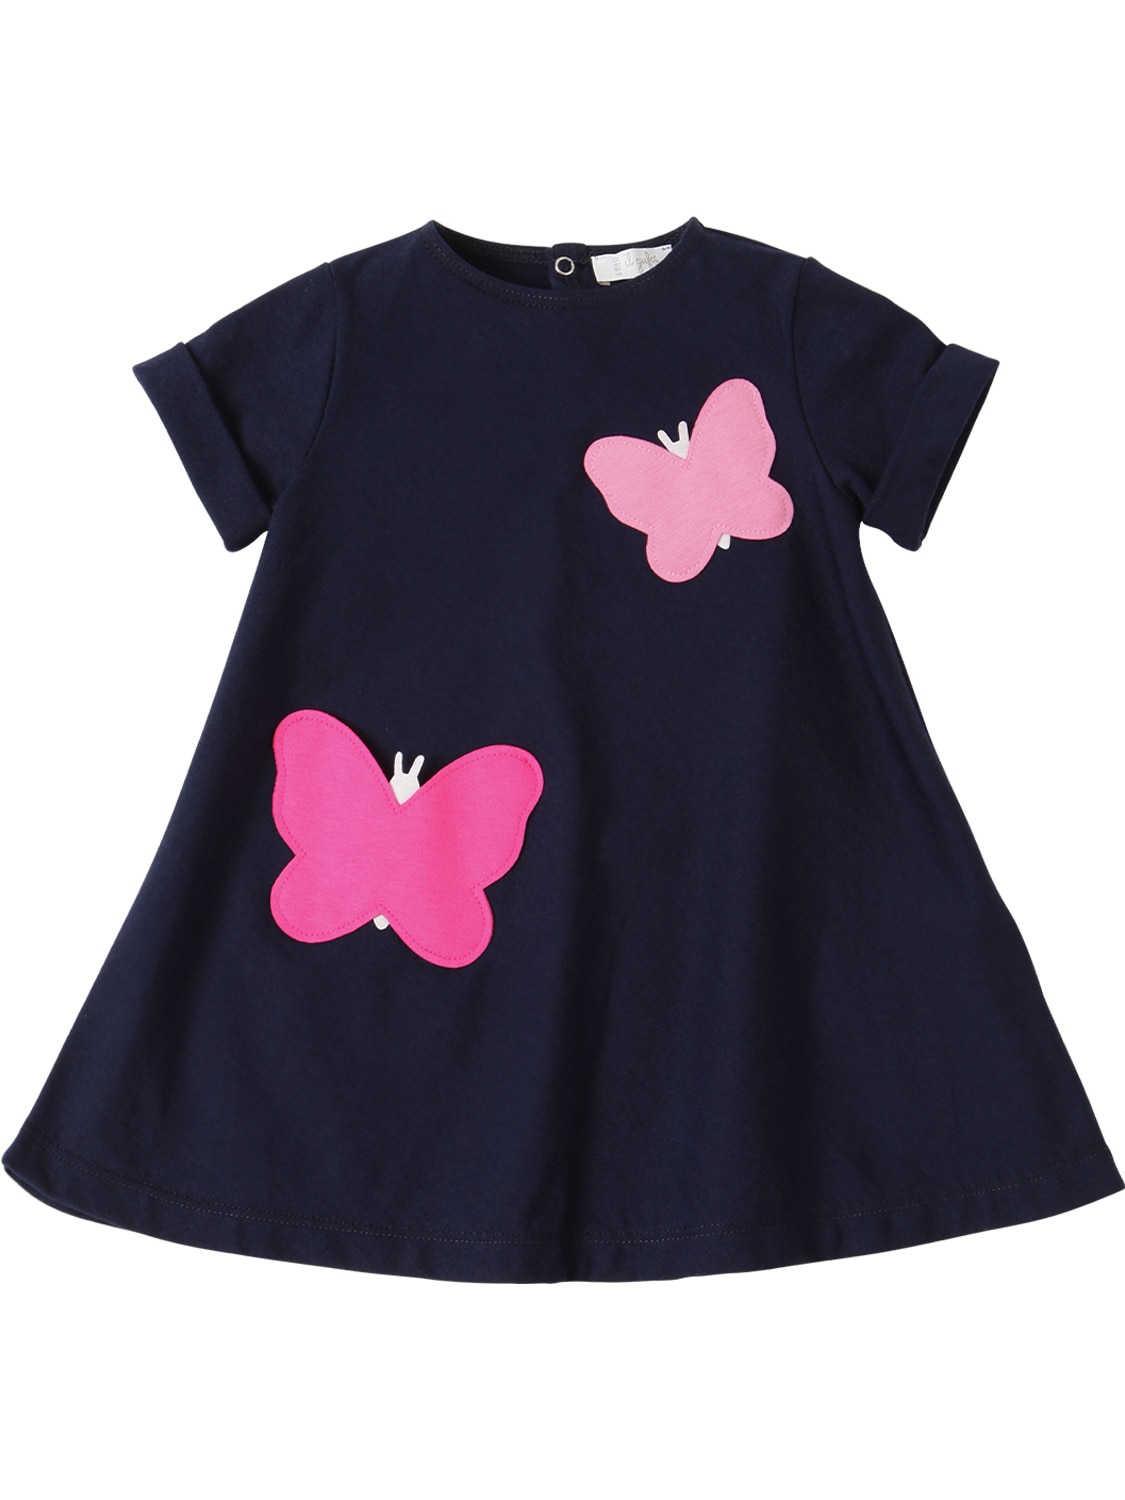 Il Gufo Babies' Butterflies Cotton Jersey Dress In Navy